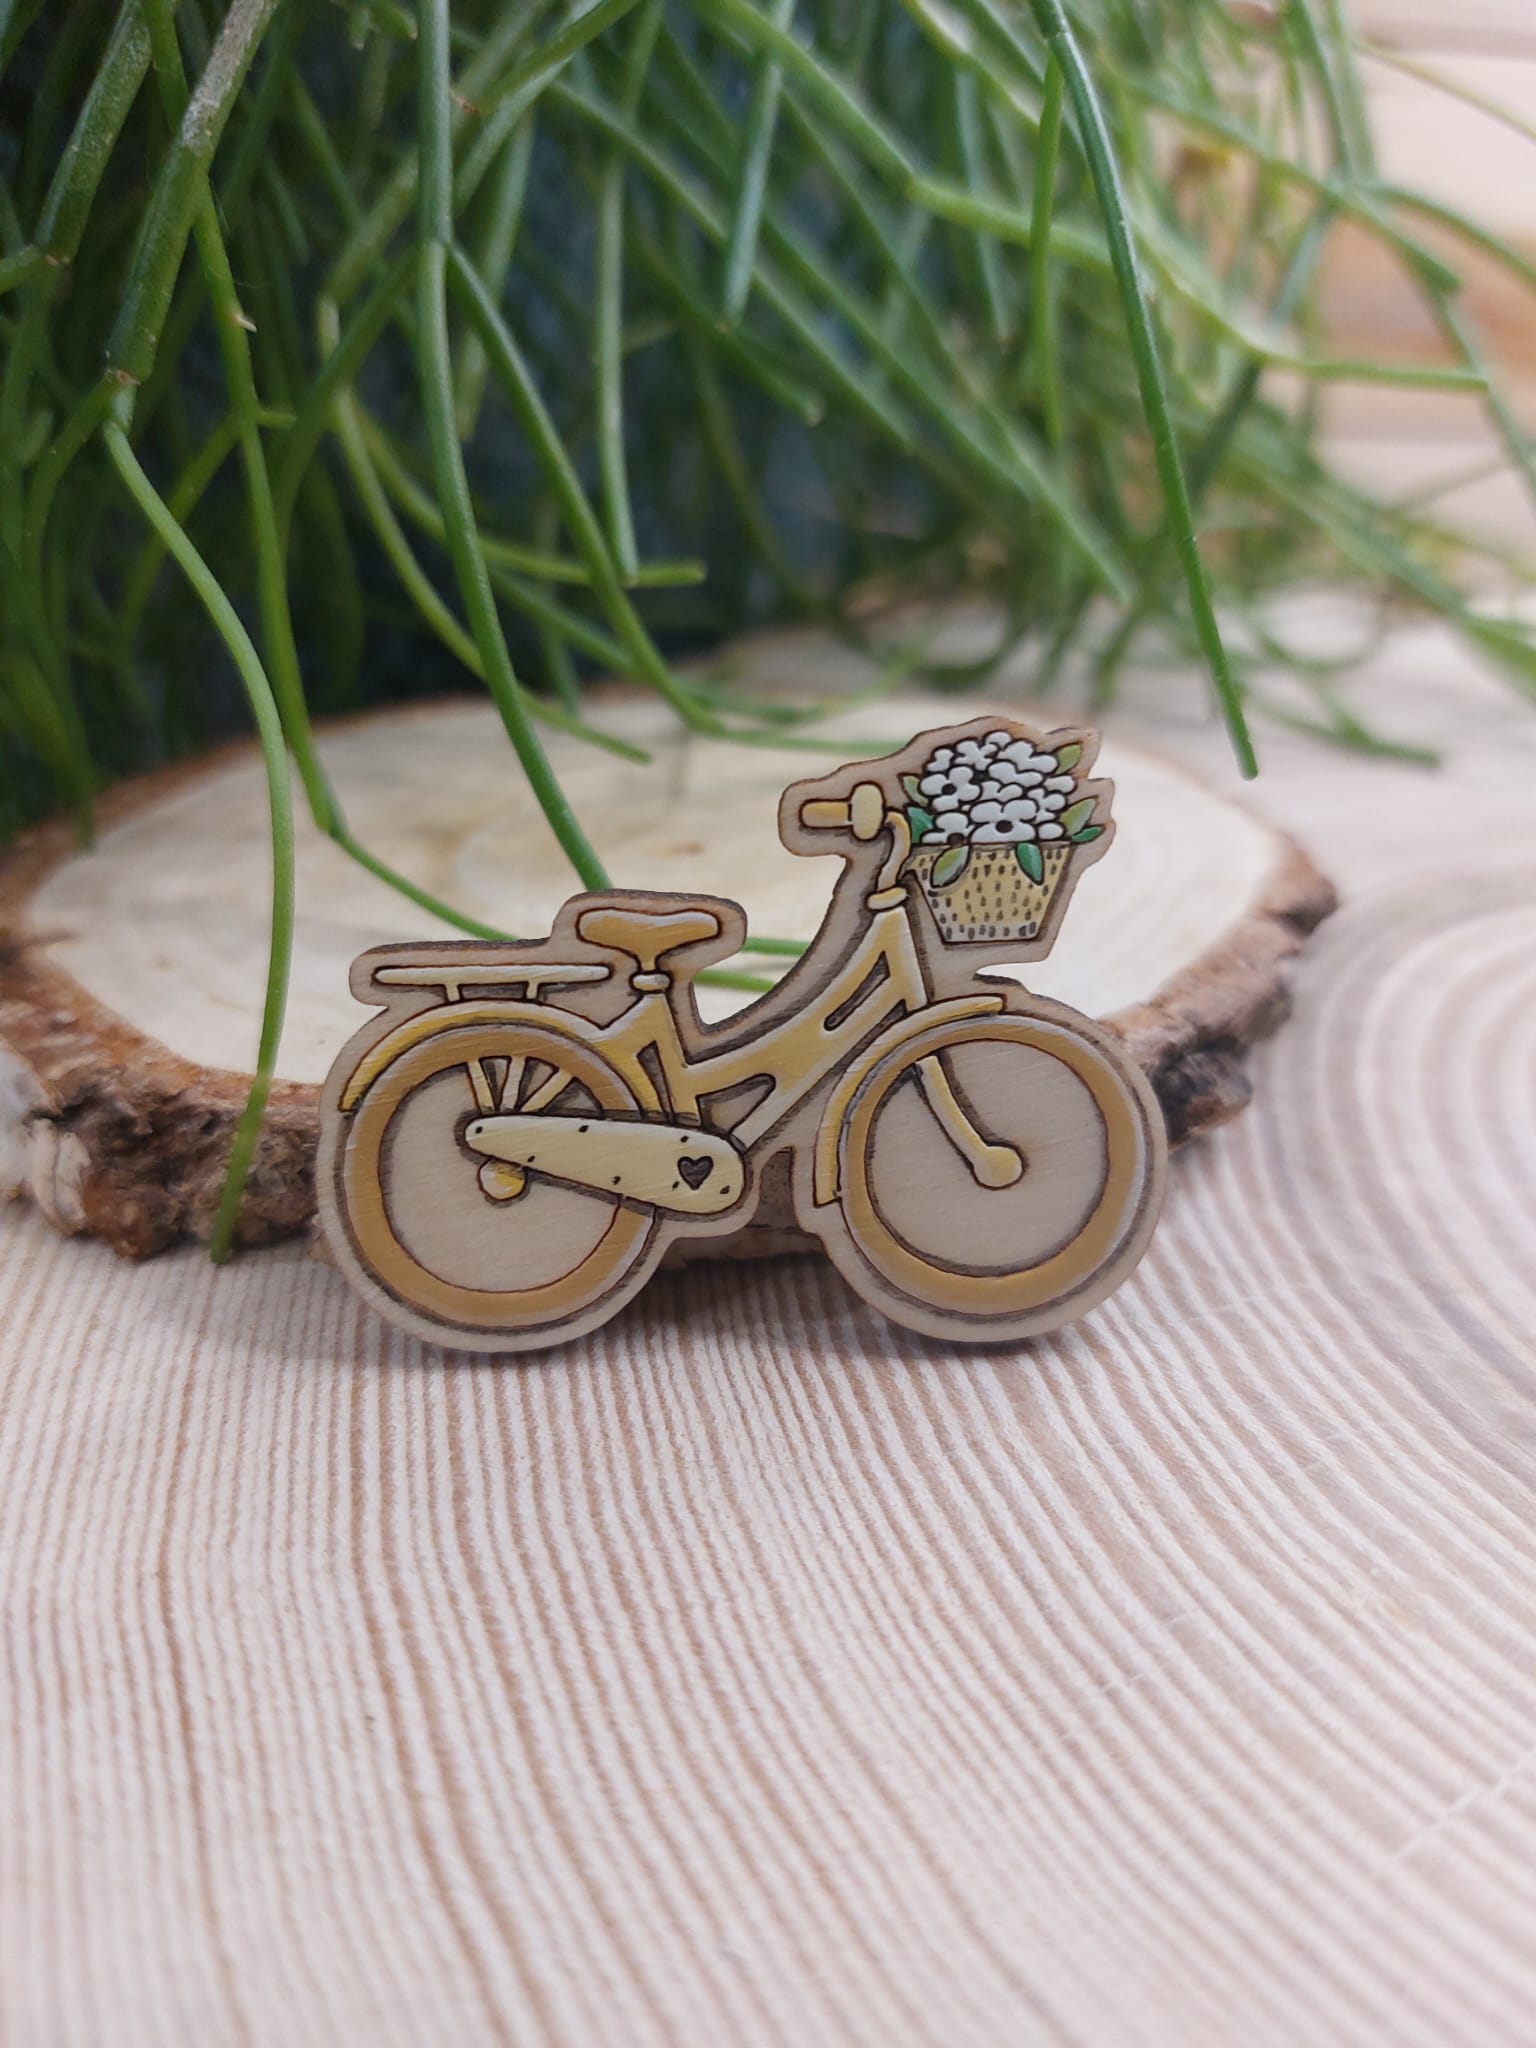 Na zdjęciu widać drewnianą, ręcznie malowaną broszkę z motywem roweru.